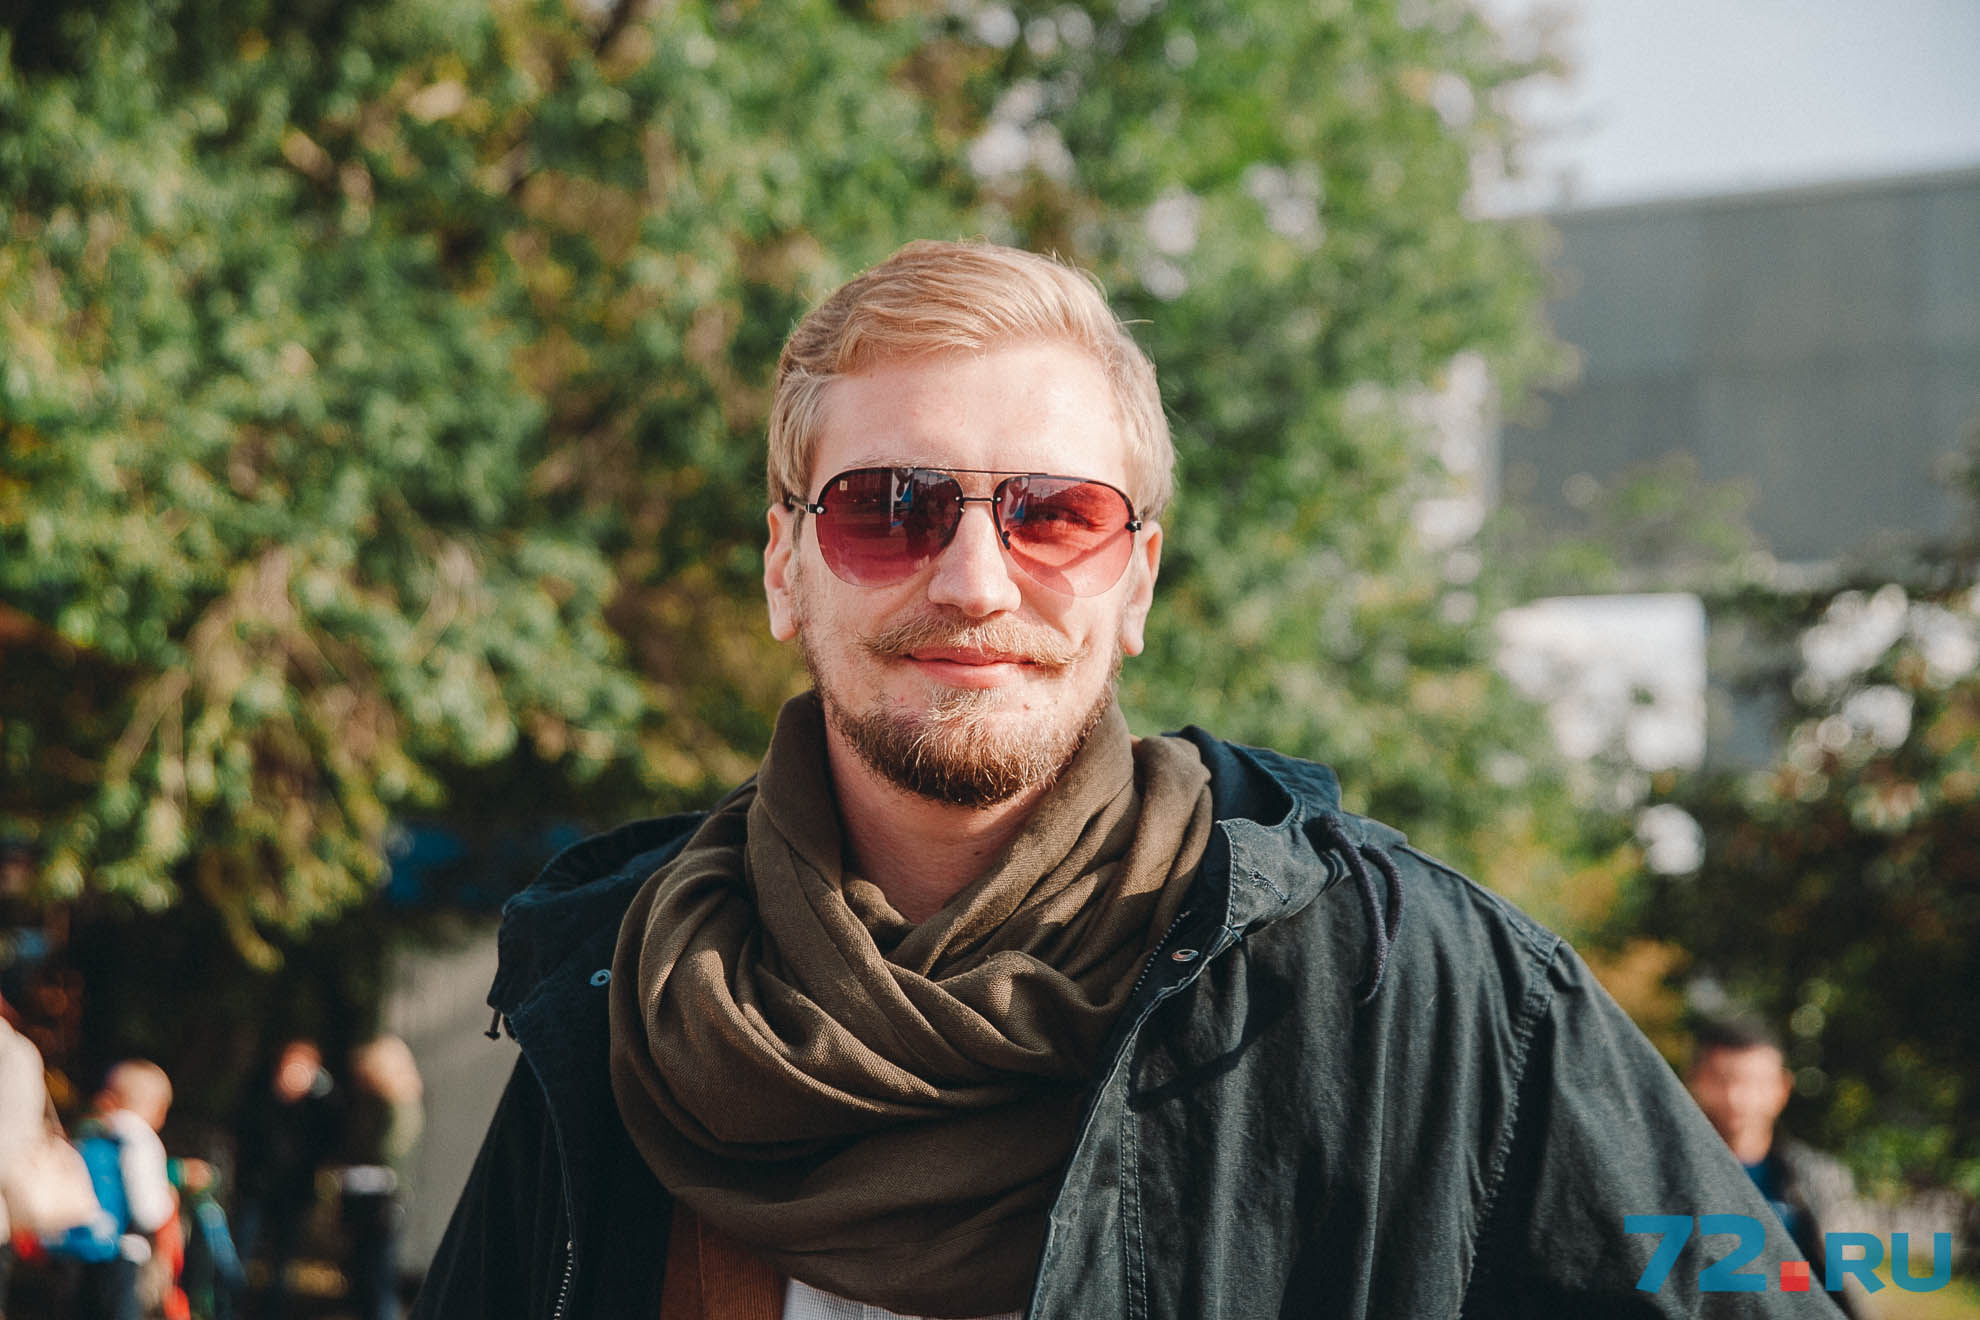 Антон, 26 лет, предприниматель